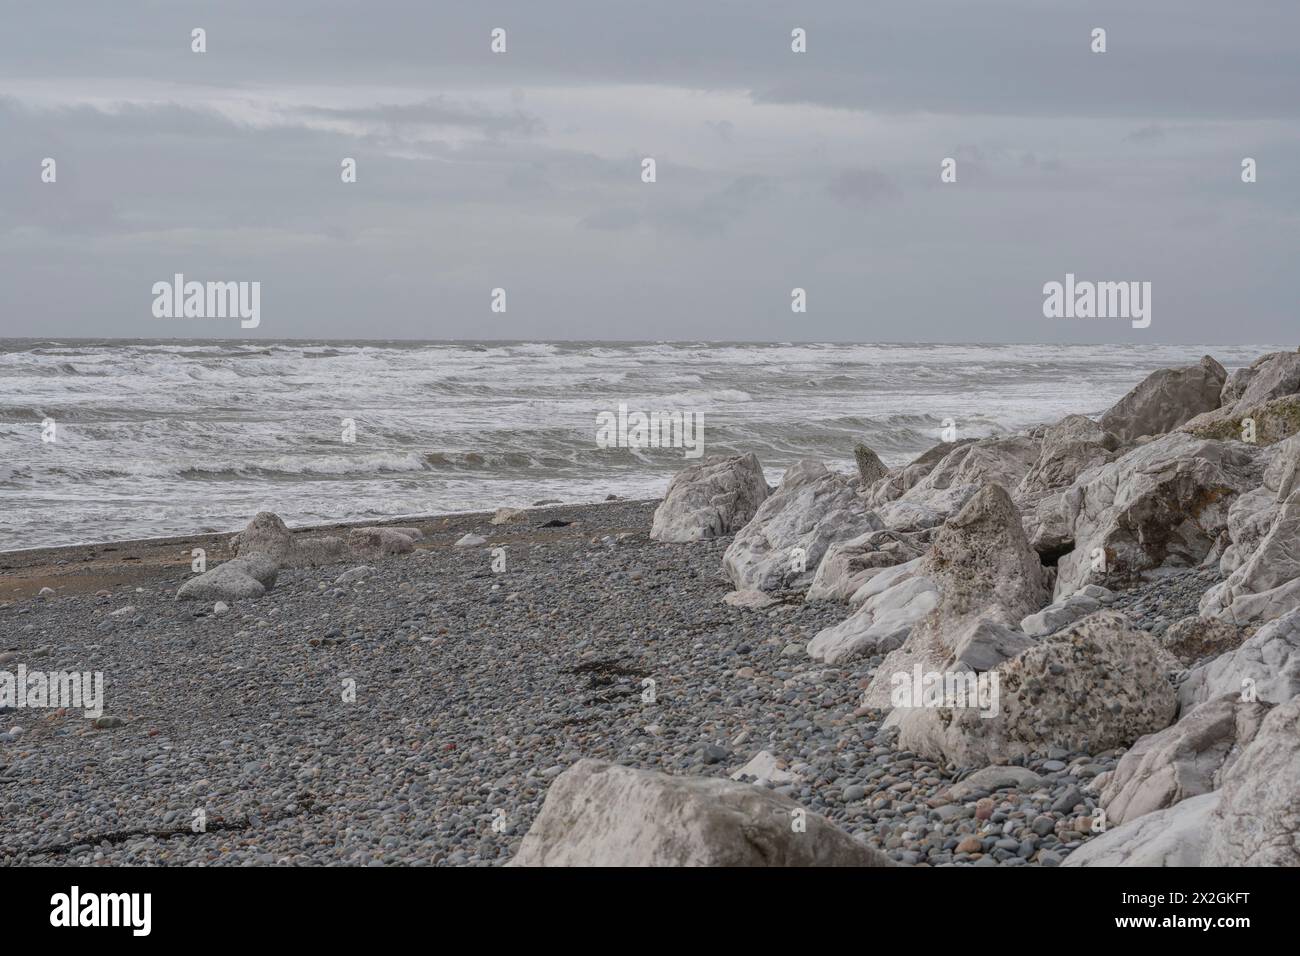 Rochers blancs sur une plage pierreuse sous le ciel gris avec des vagues roulantes d'eau vive, paysage marin silencieux atmosphérique Banque D'Images